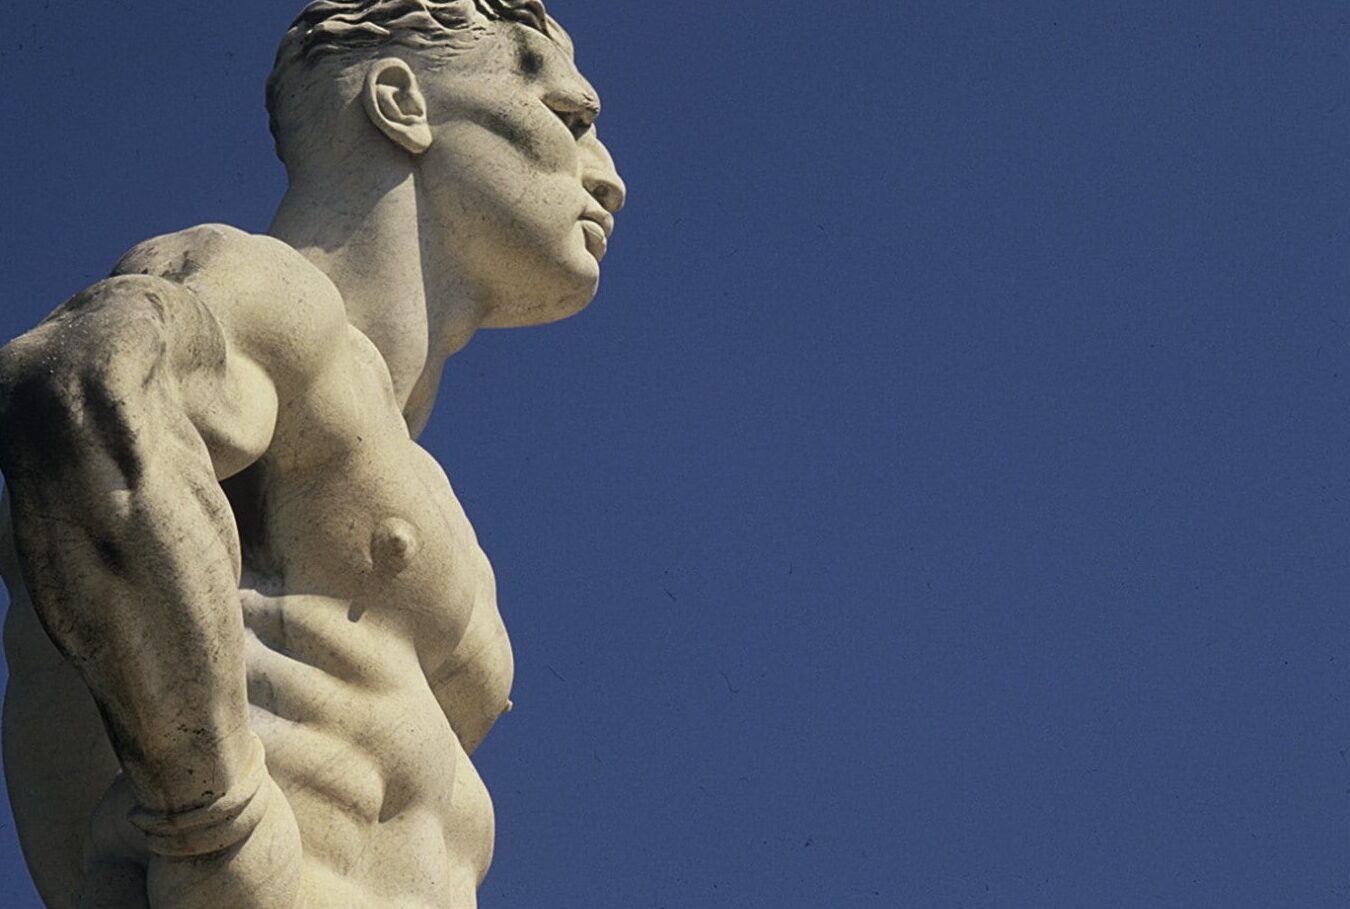 La belleza esculpida: el arte de las estatuas griegas musculosas